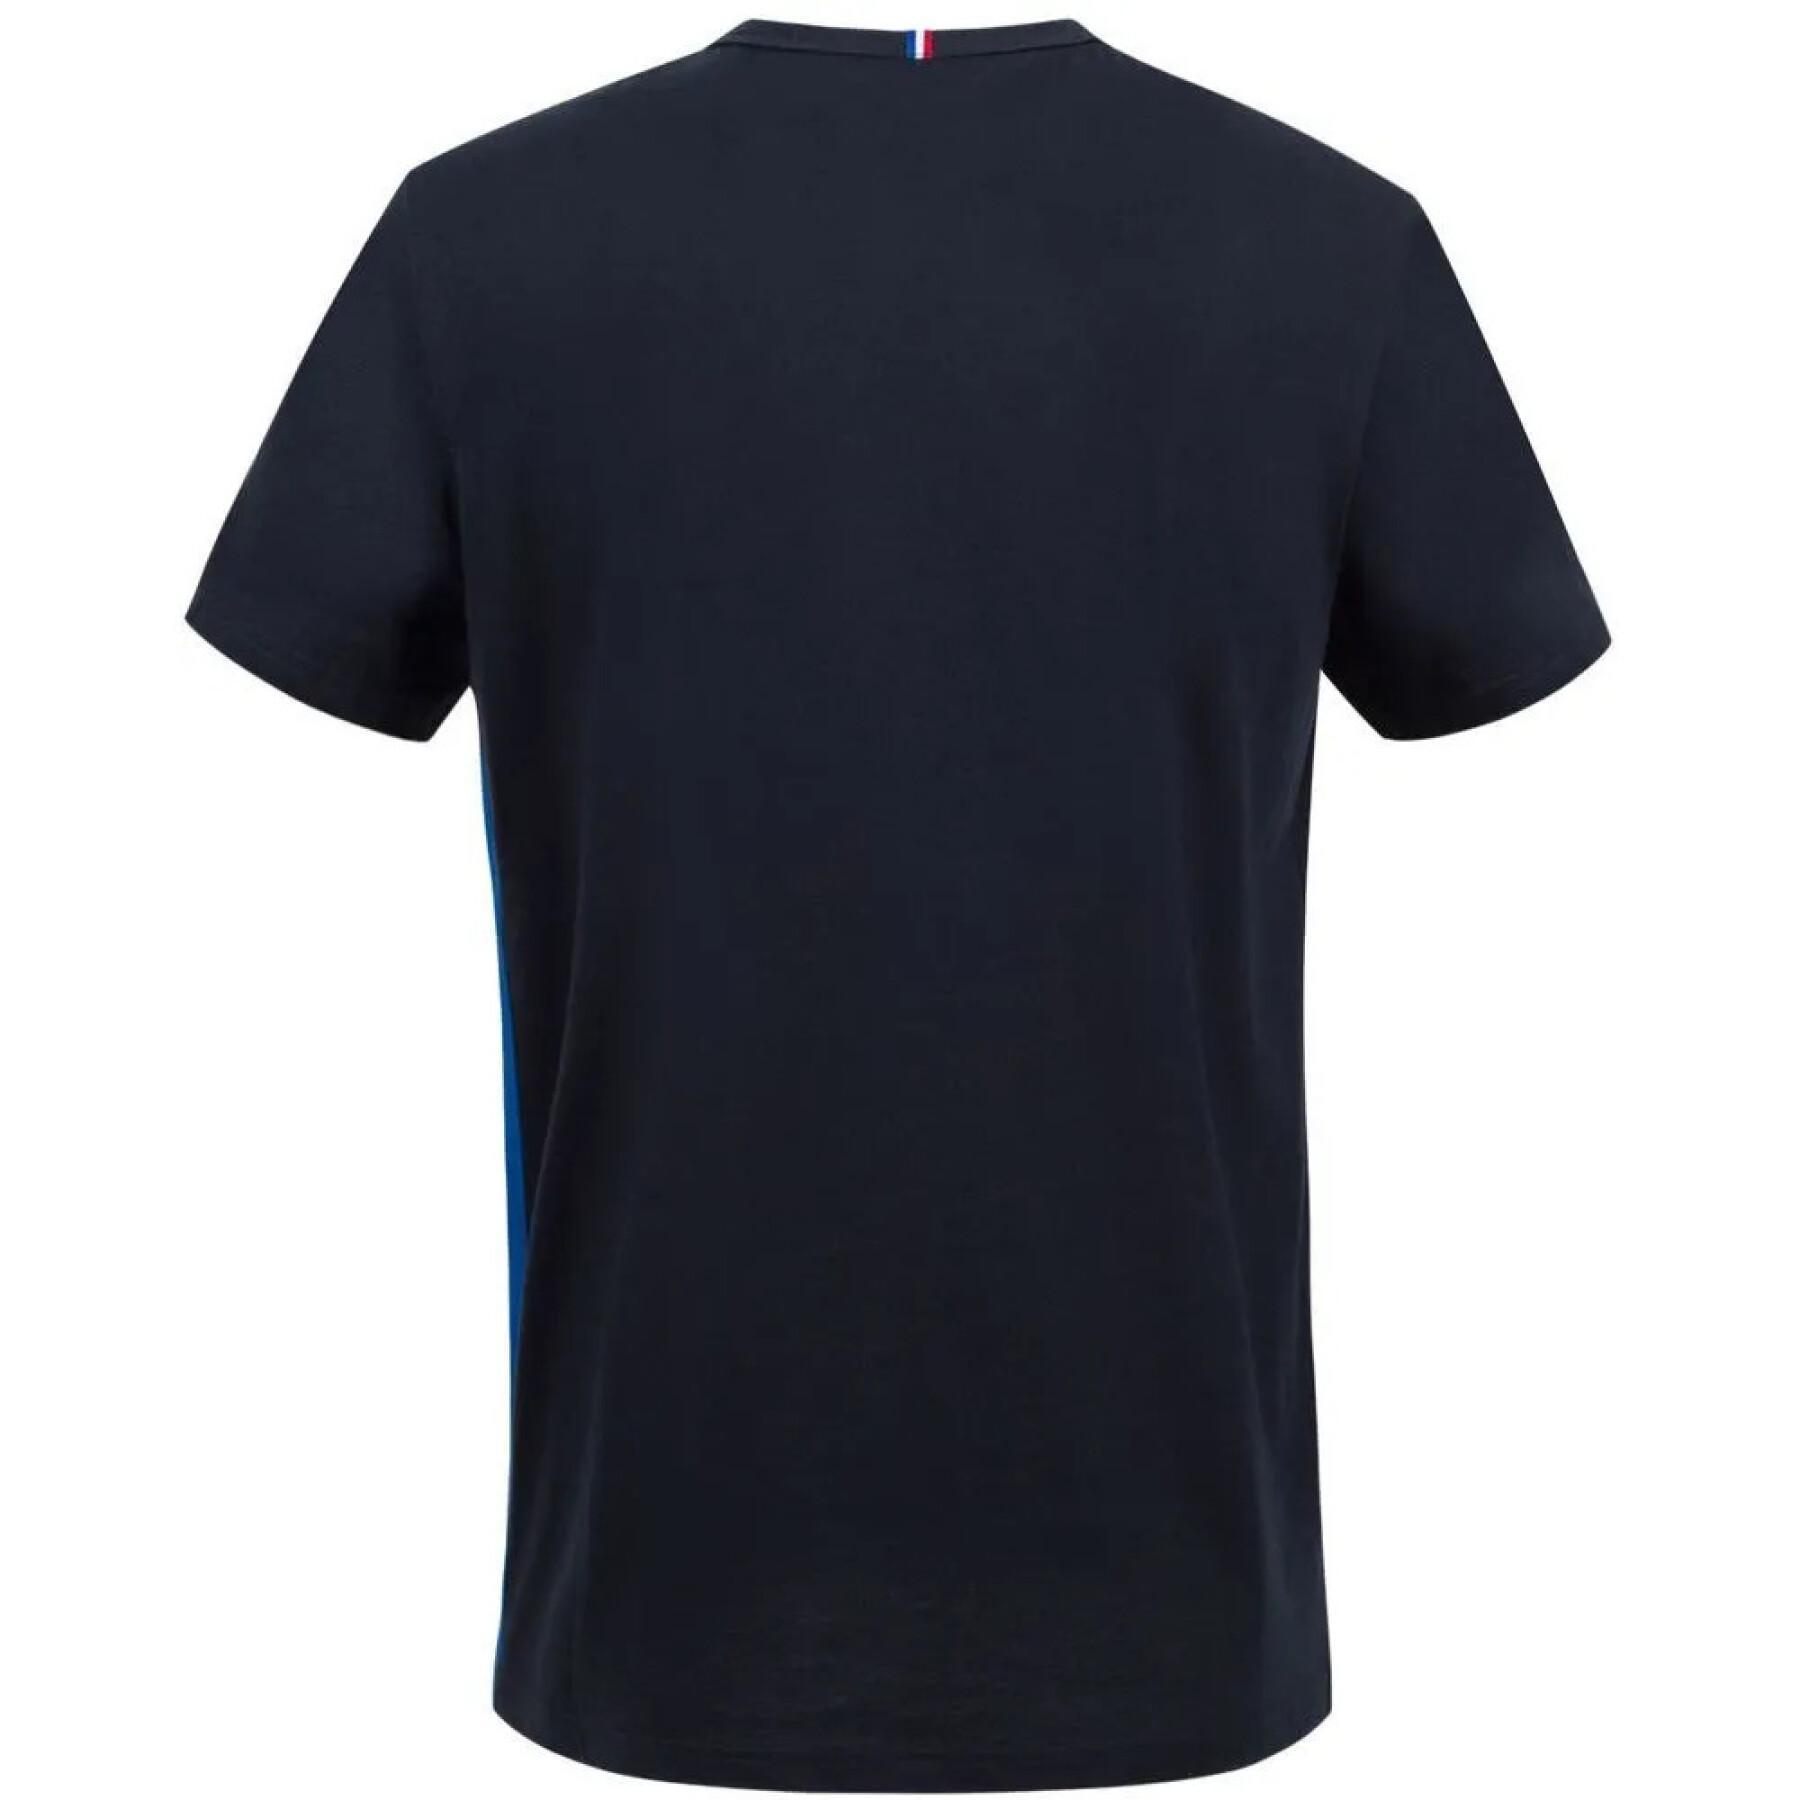 Koszulka Le Coq Sportif tricolore n°2